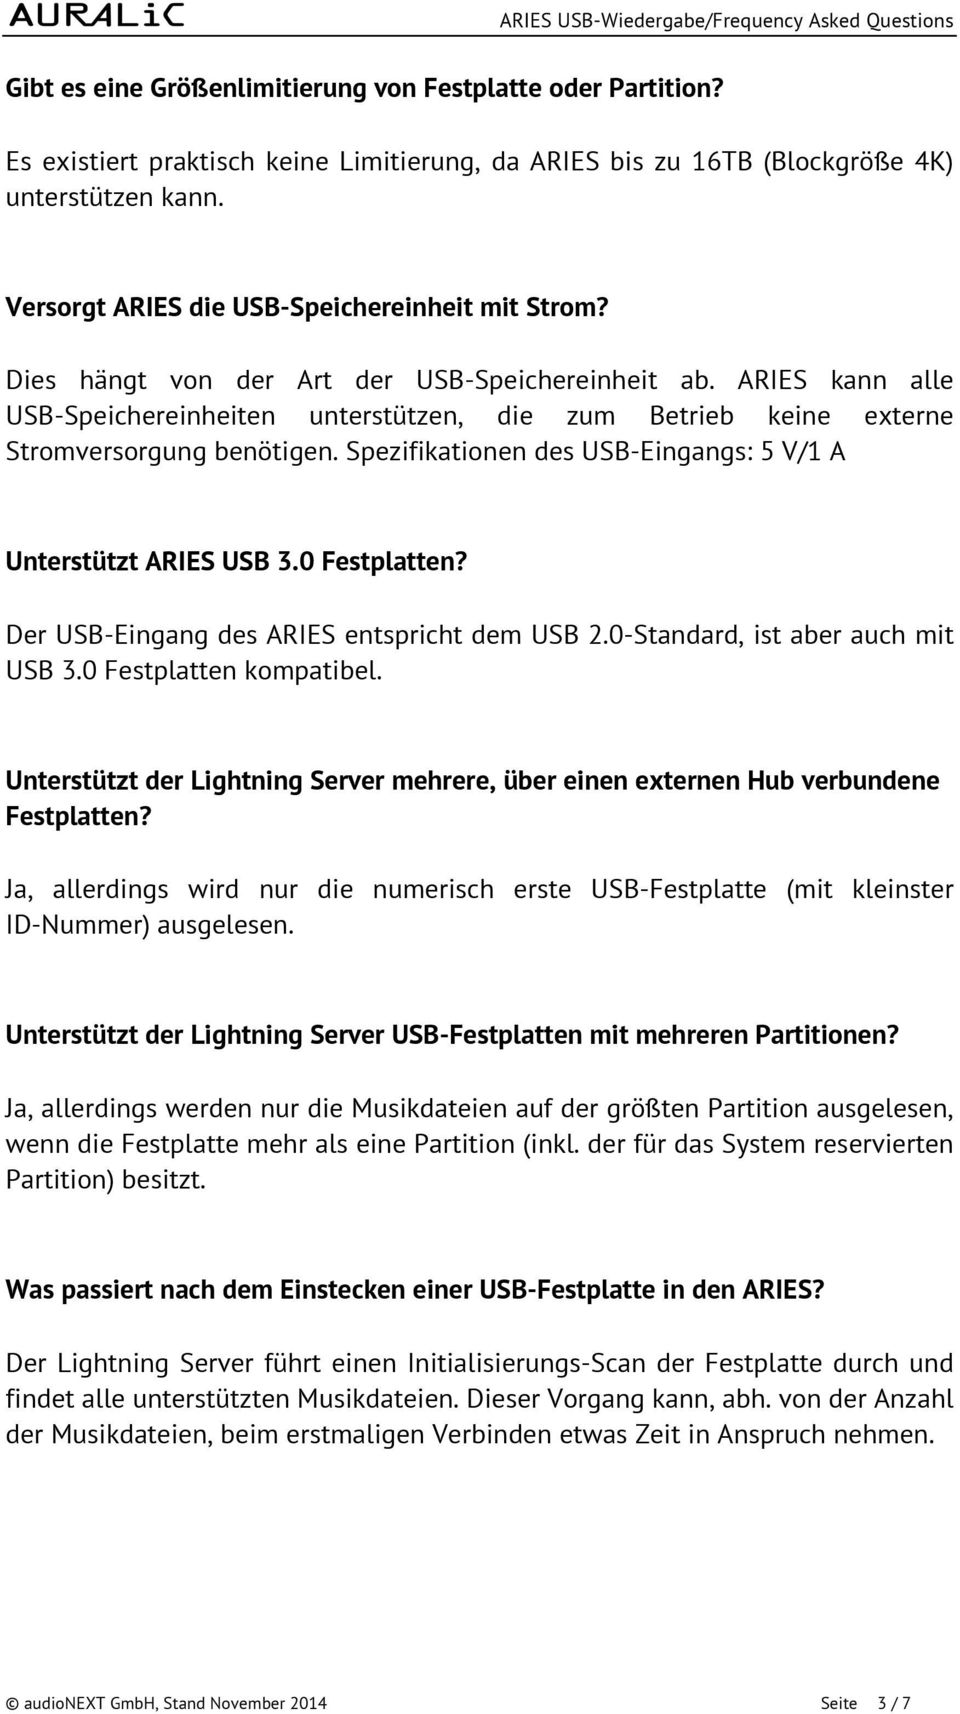 ARIES kann alle USB-Speichereinheiten unterstützen, die zum Betrieb keine externe Stromversorgung benötigen. Spezifikationen des USB-Eingangs: 5 V/1 A Unterstützt ARIES USB 3.0 Festplatten?